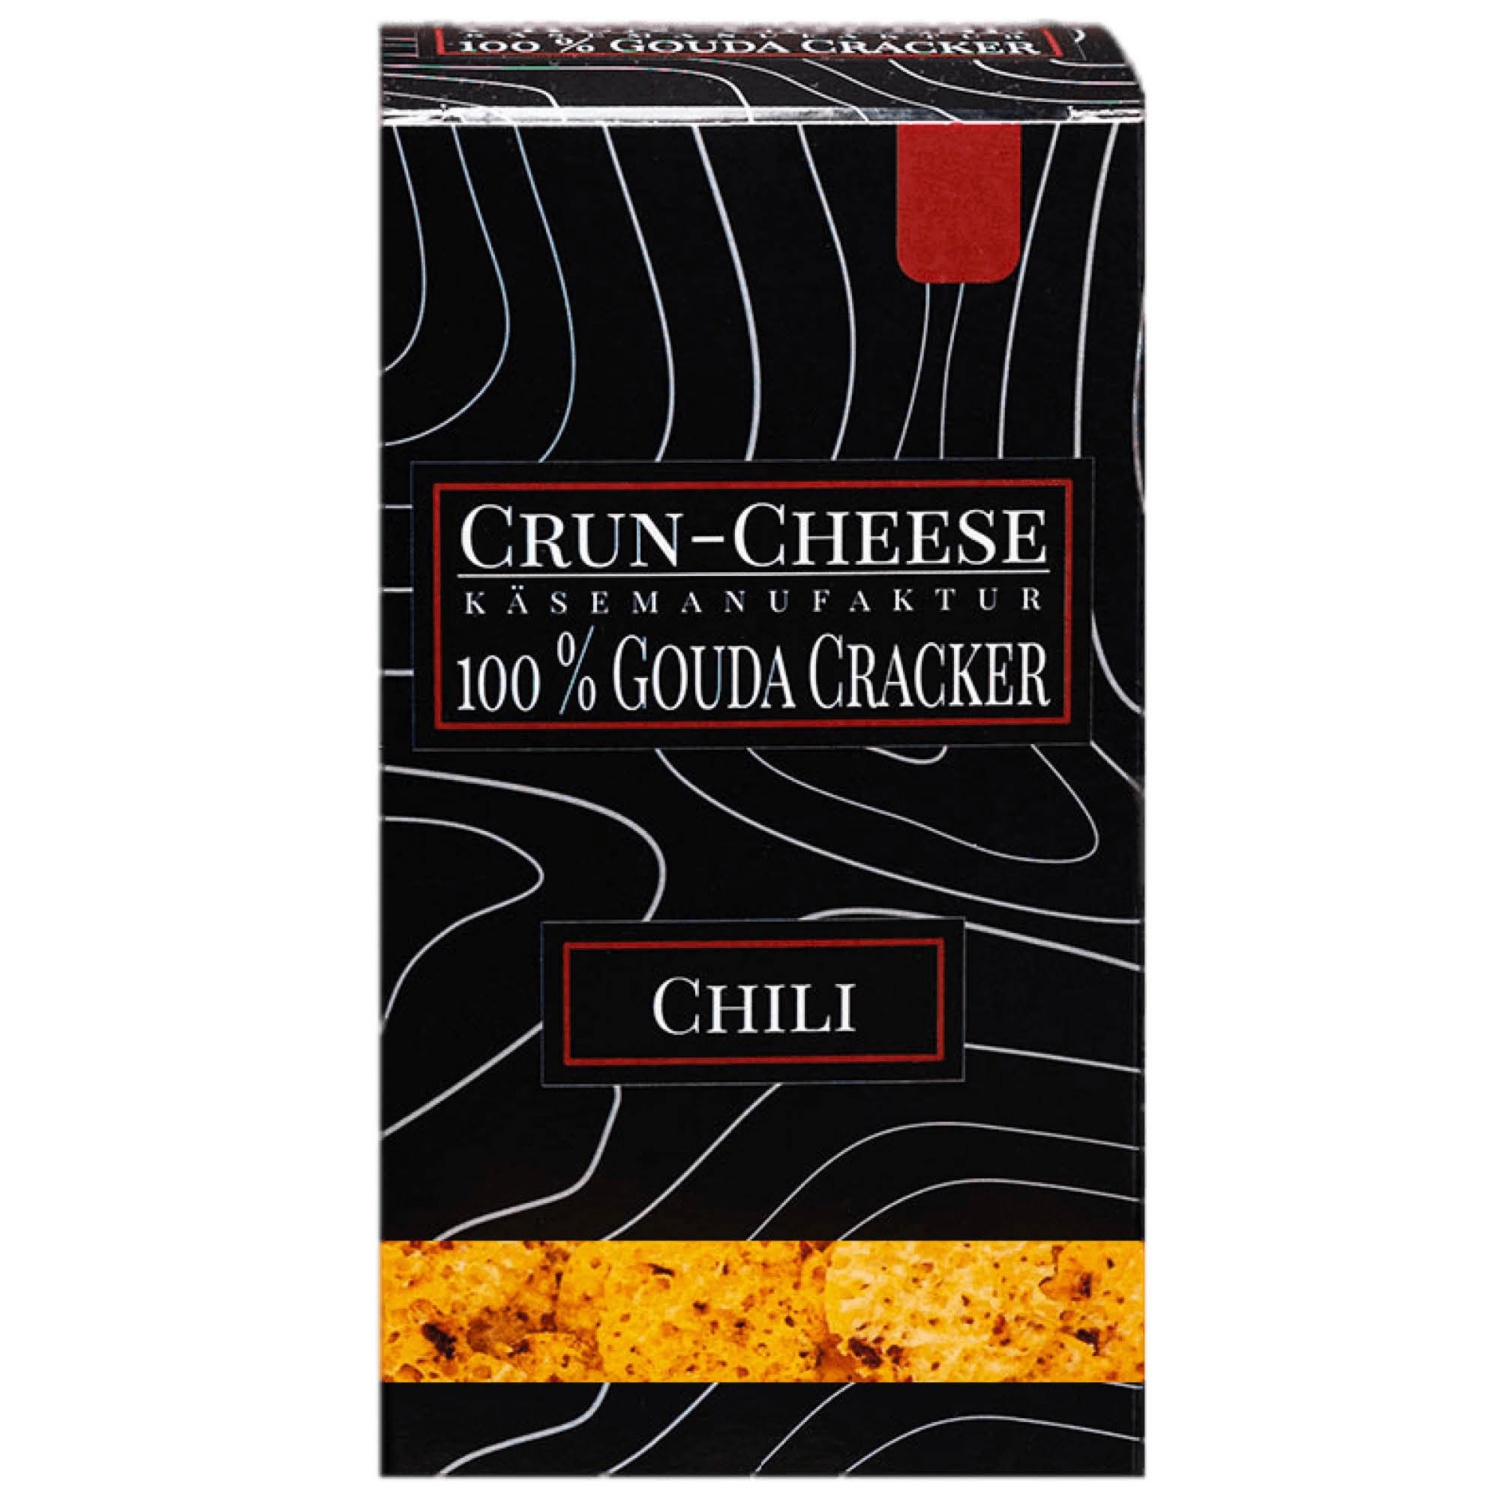 CRUN CHEESE Käse Cracker, Chili